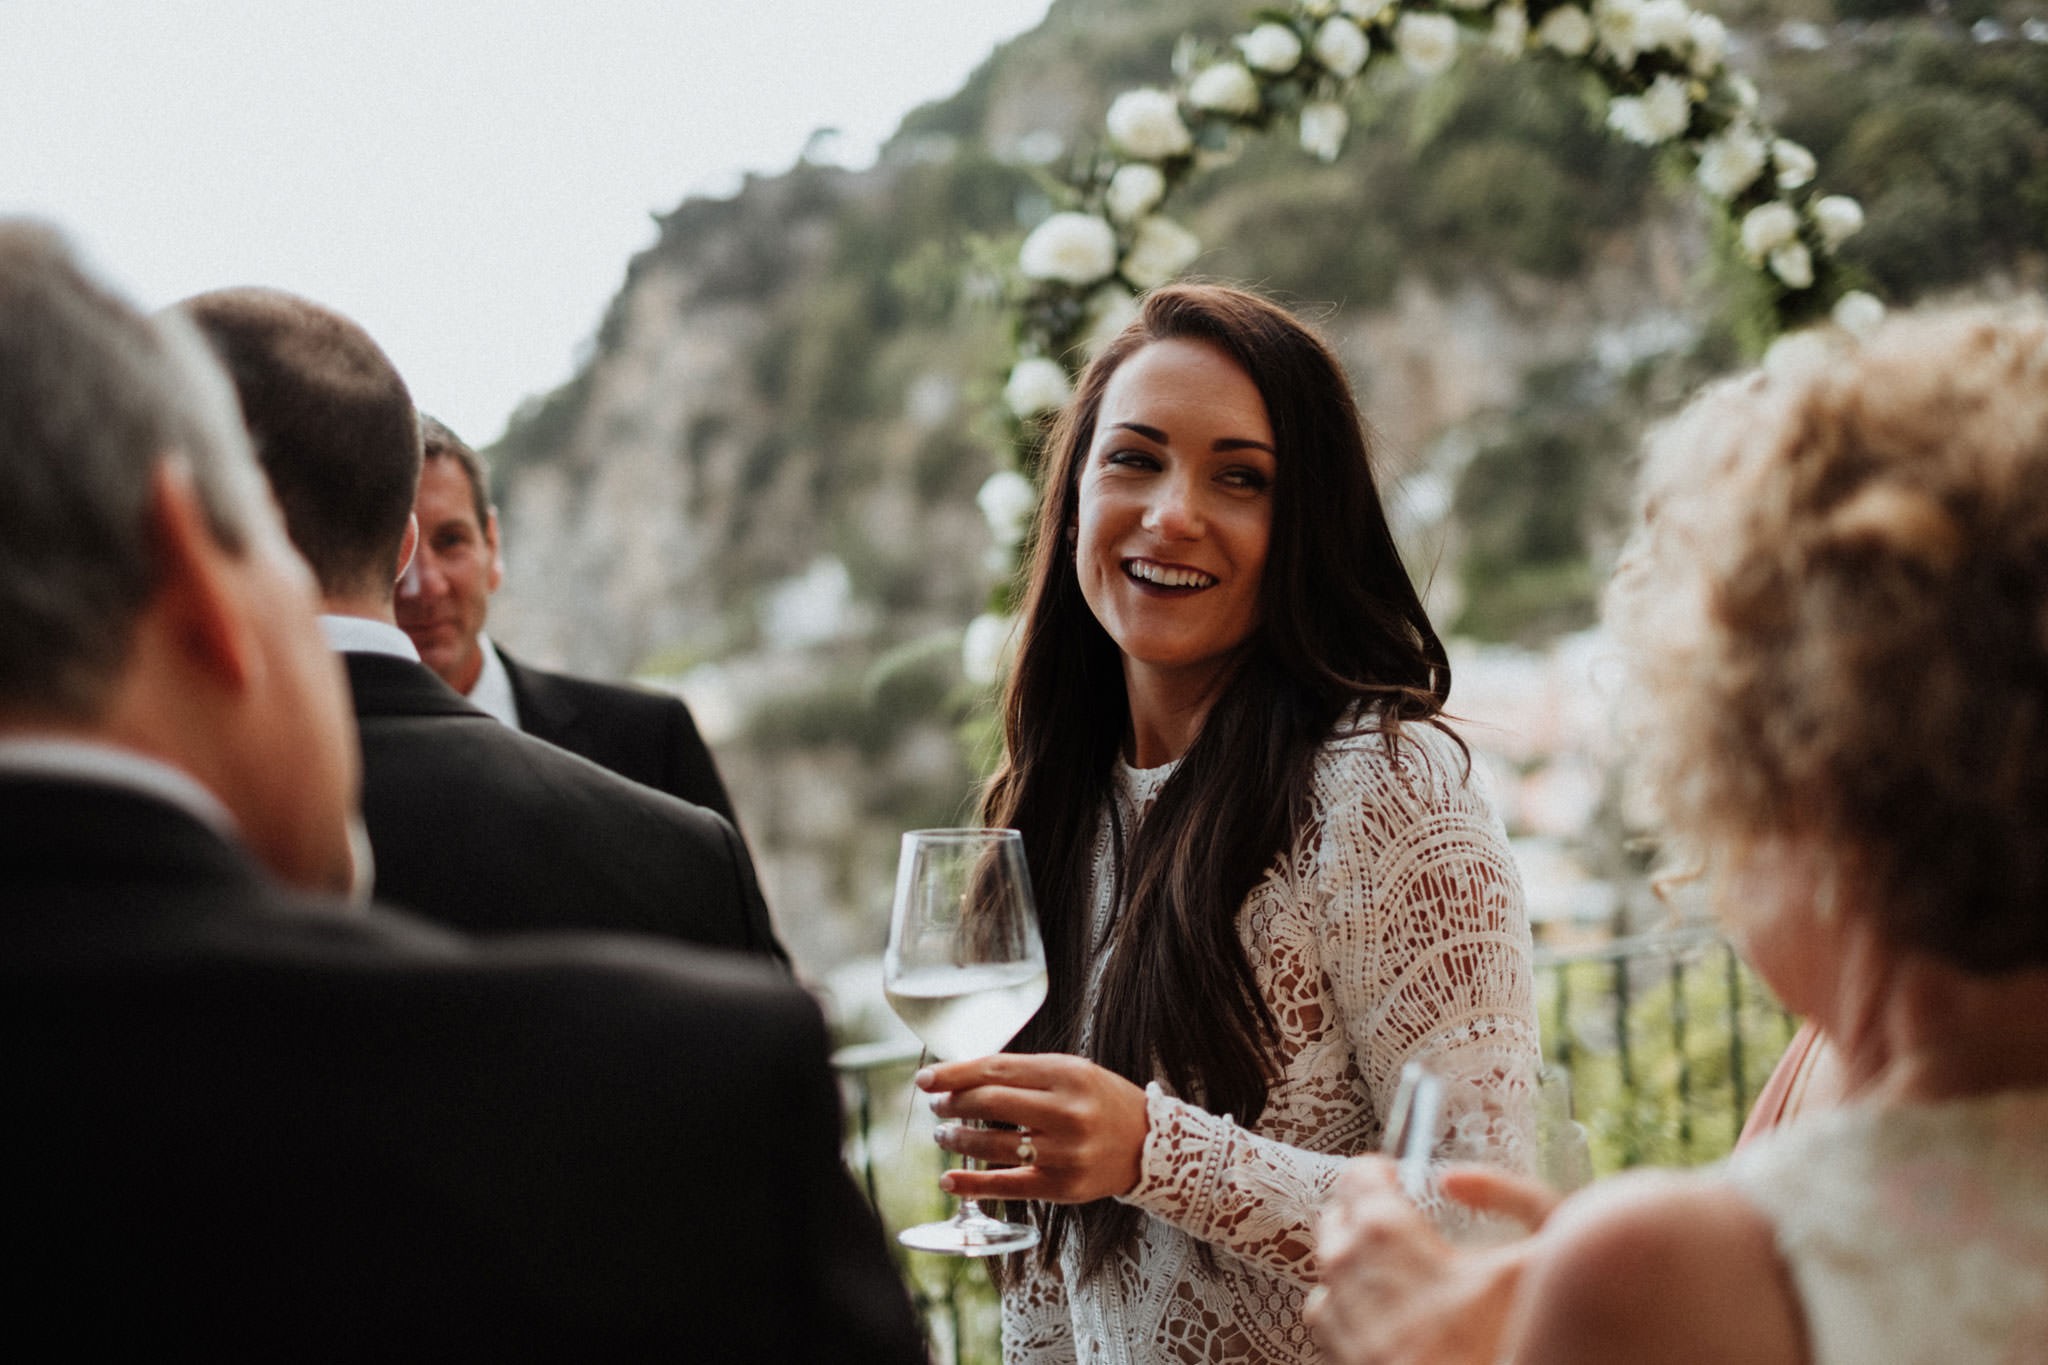 Ceremony - Wedding in Positano